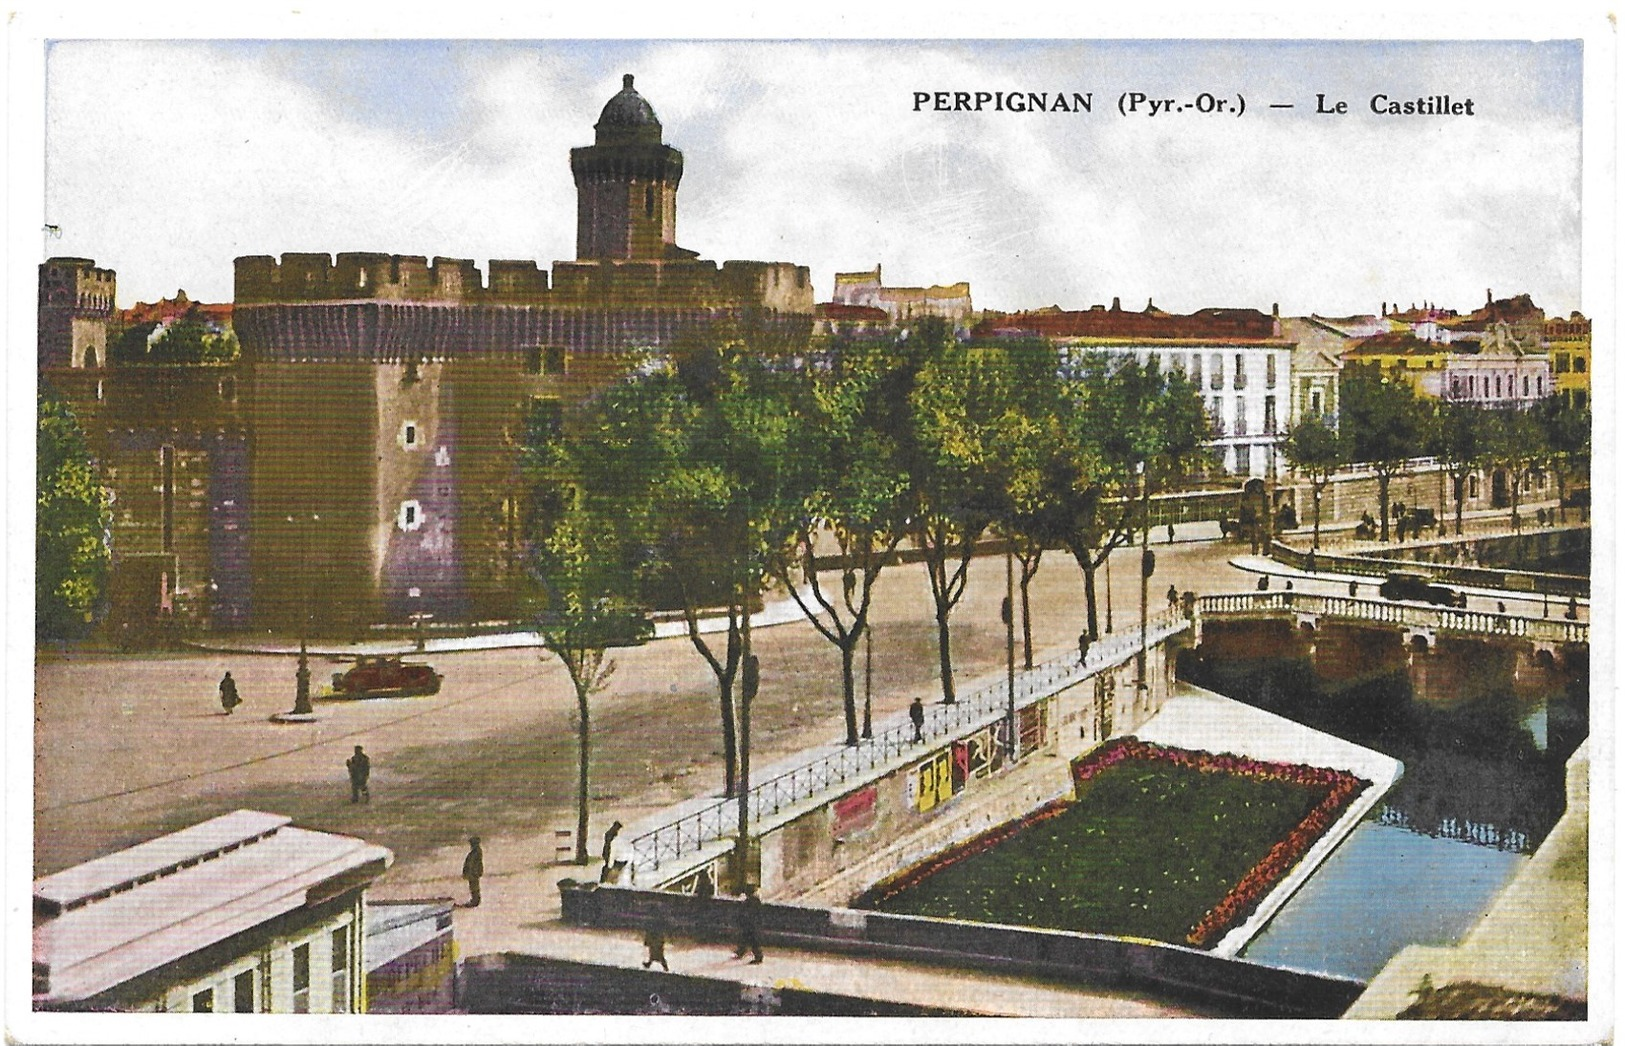 Perpignan Le Castillet - Perpignan